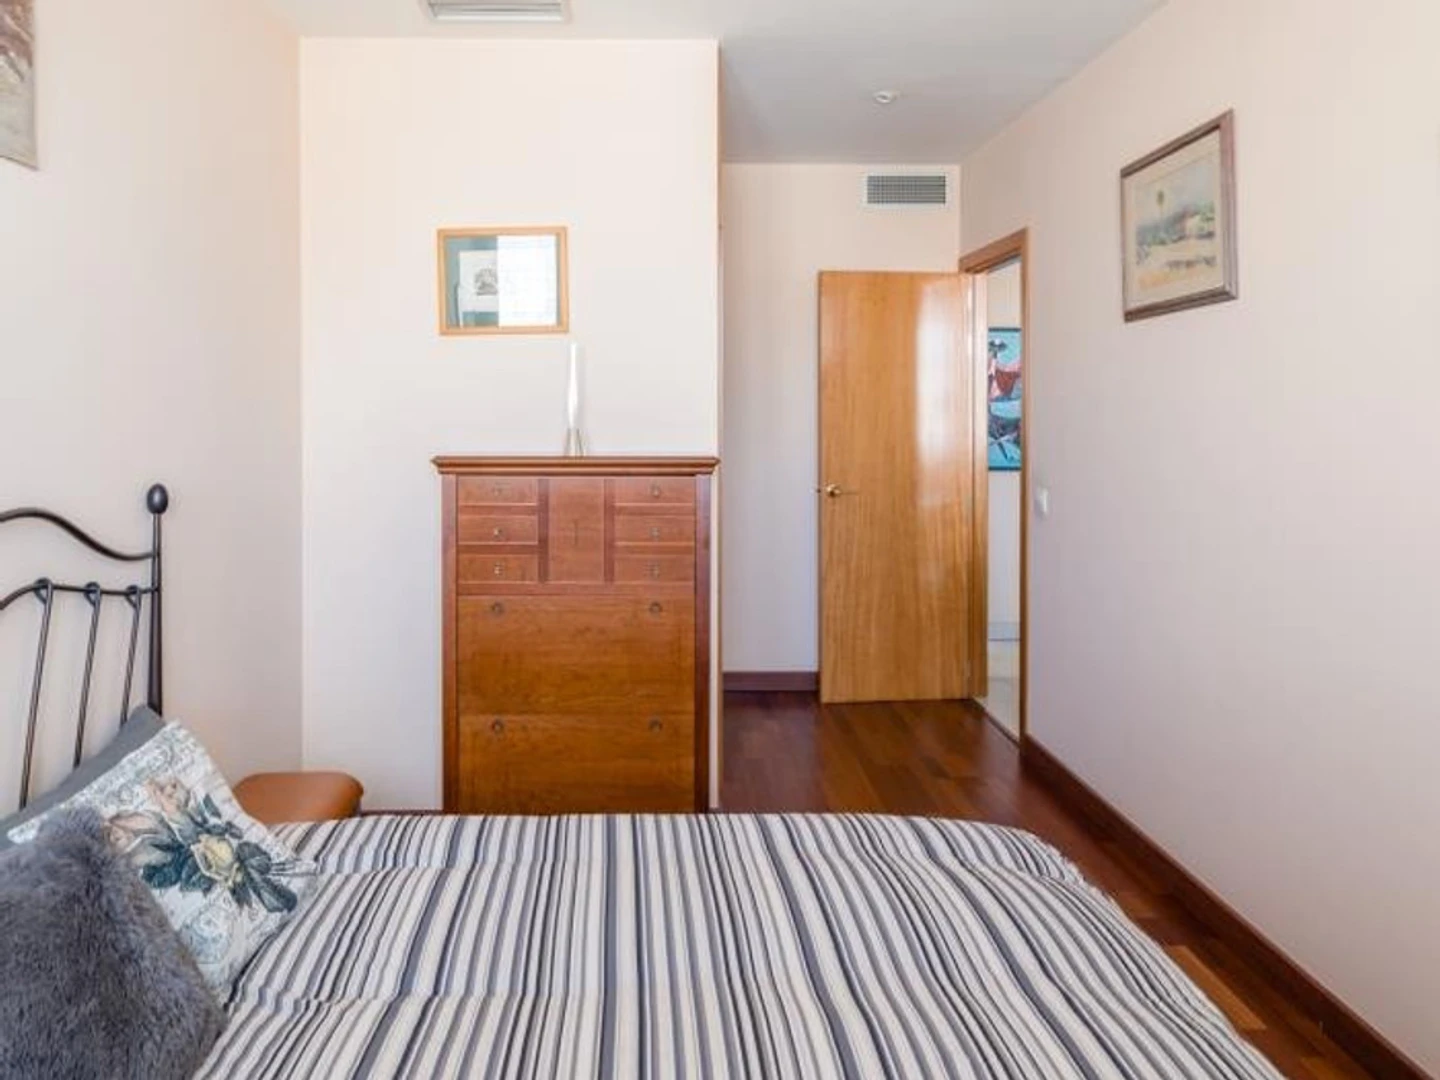 Accommodation with 3 bedrooms in Santa Cruz De Tenerife